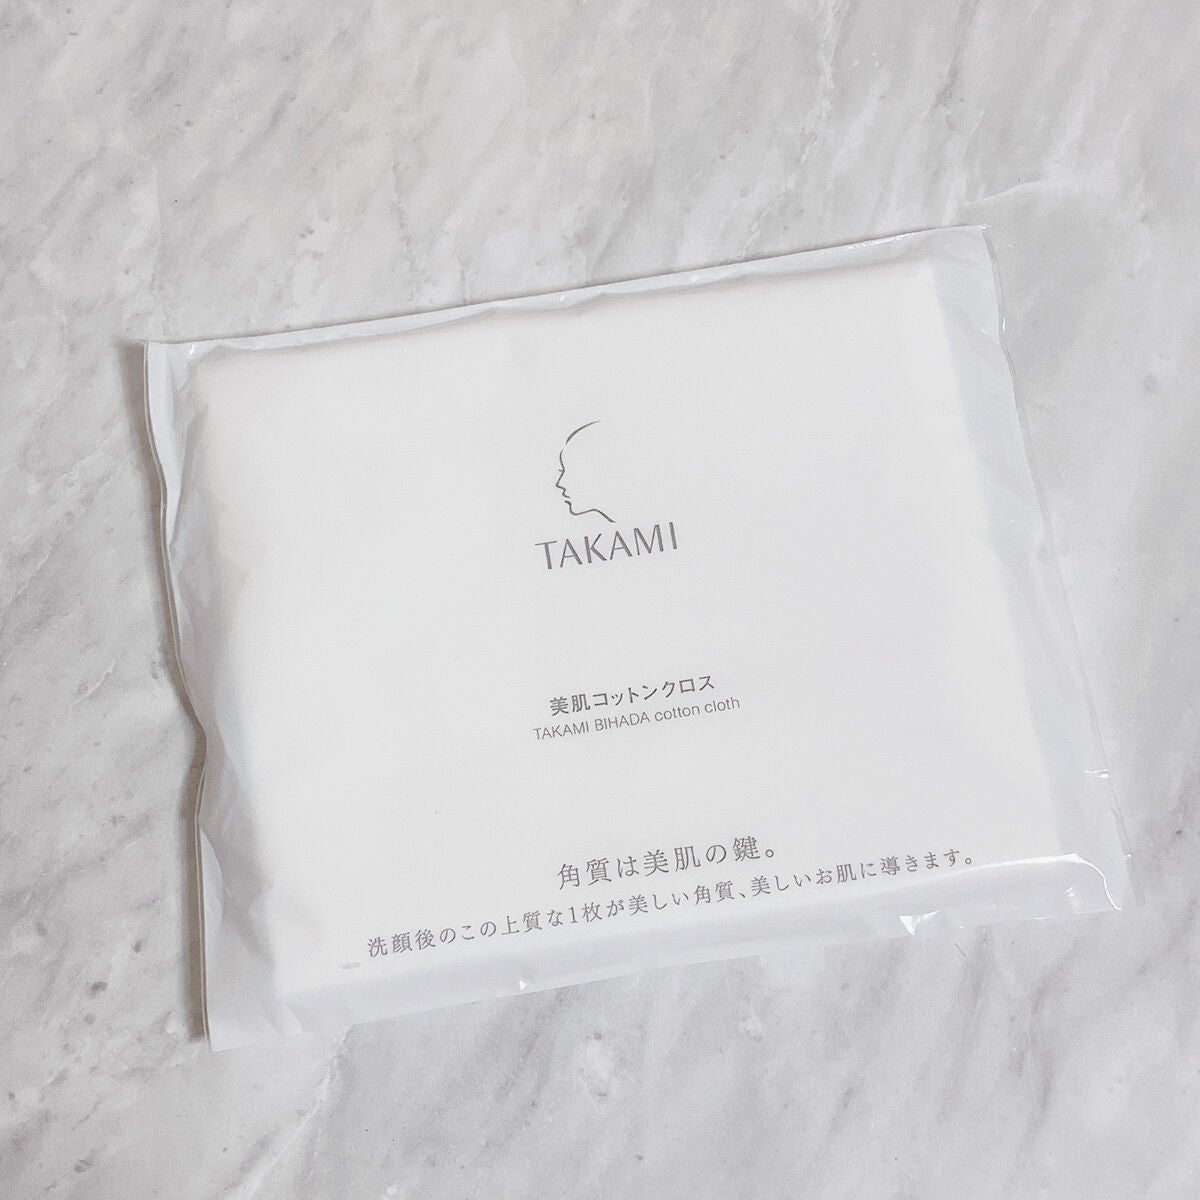 タカミ サンプル 美肌コットンクロス - トライアルセット・サンプル